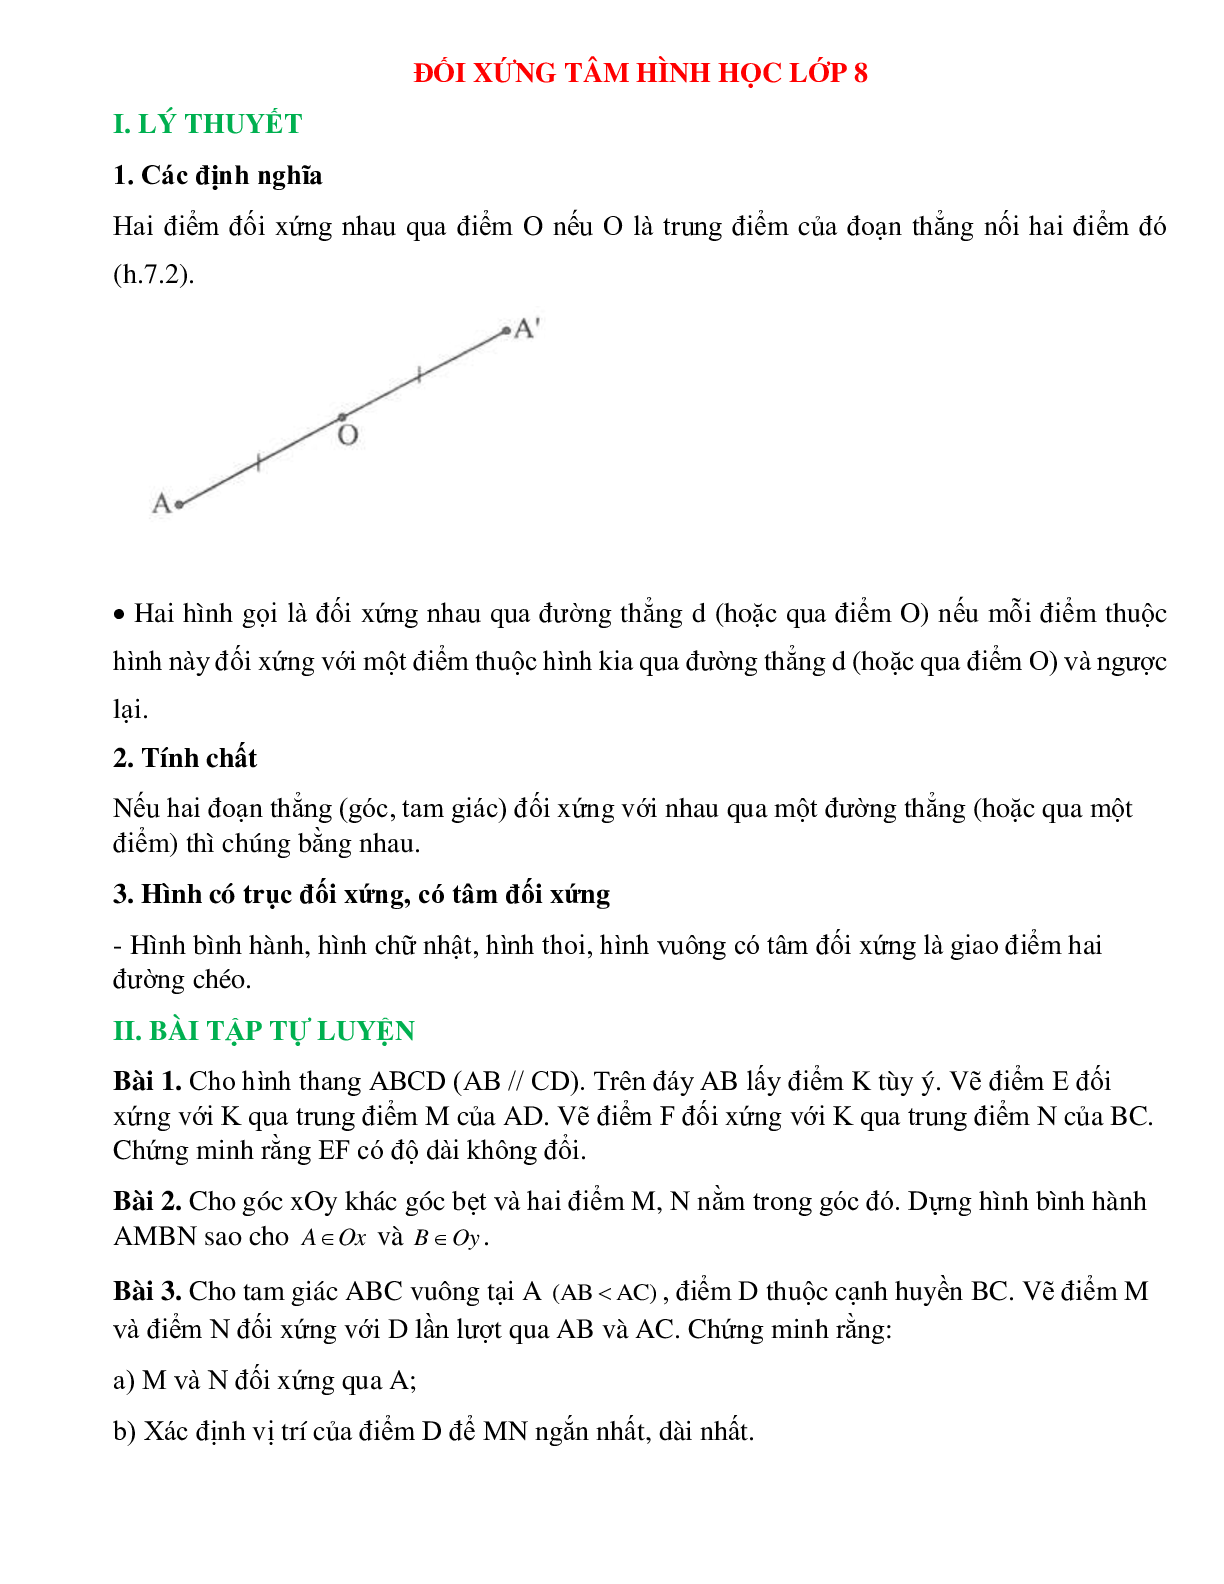 Đối xứng tâm hình học lớp 8 (trang 1)